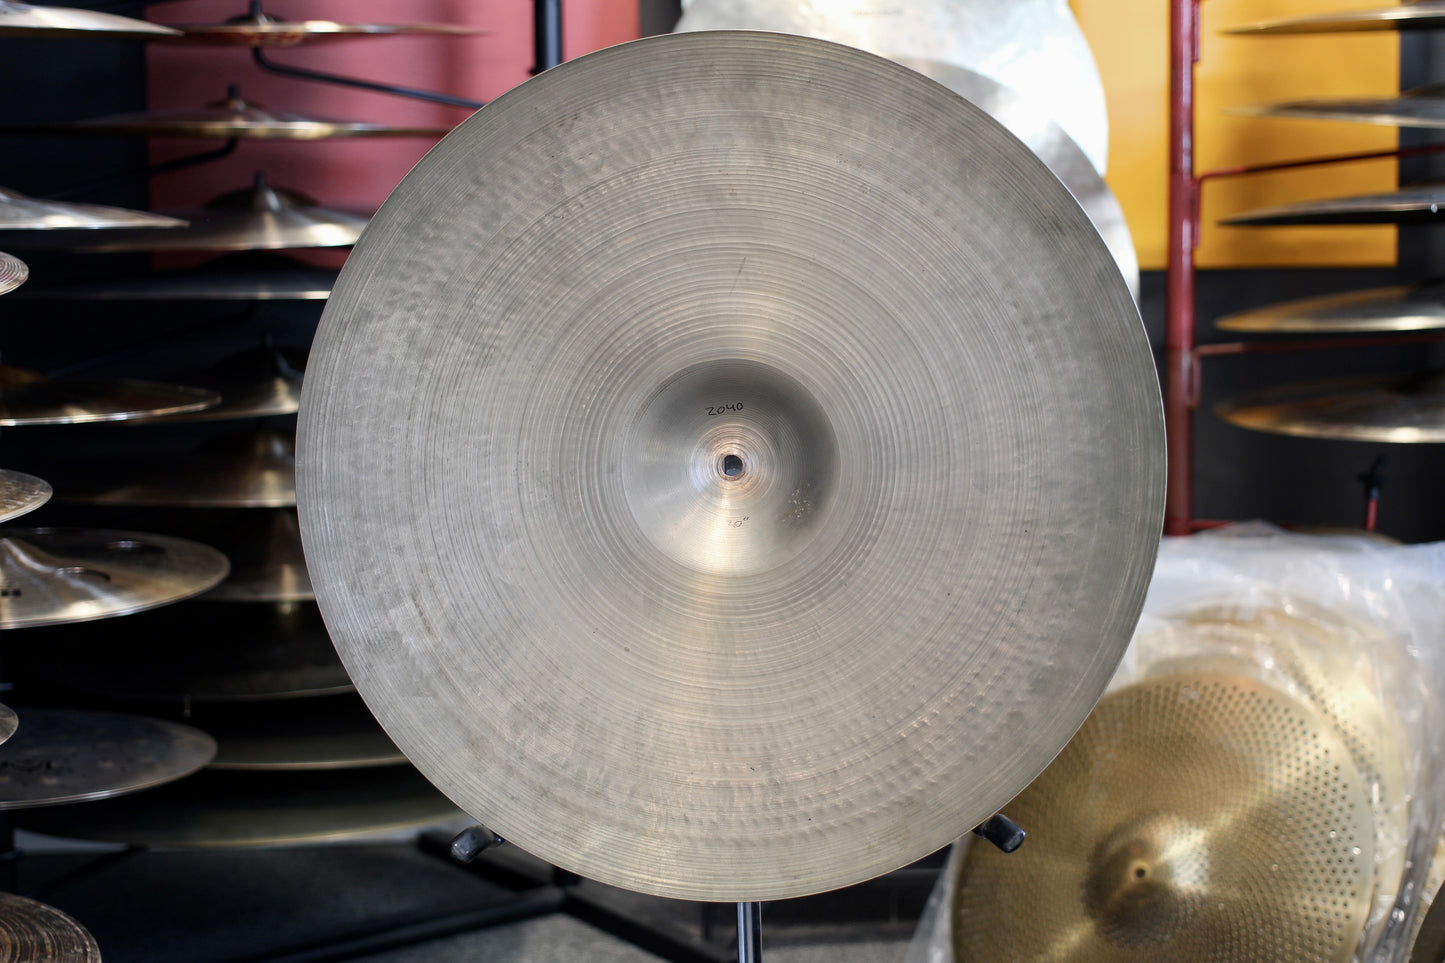 1960s A. Zildjian 20" Ride Cymbal 2040g